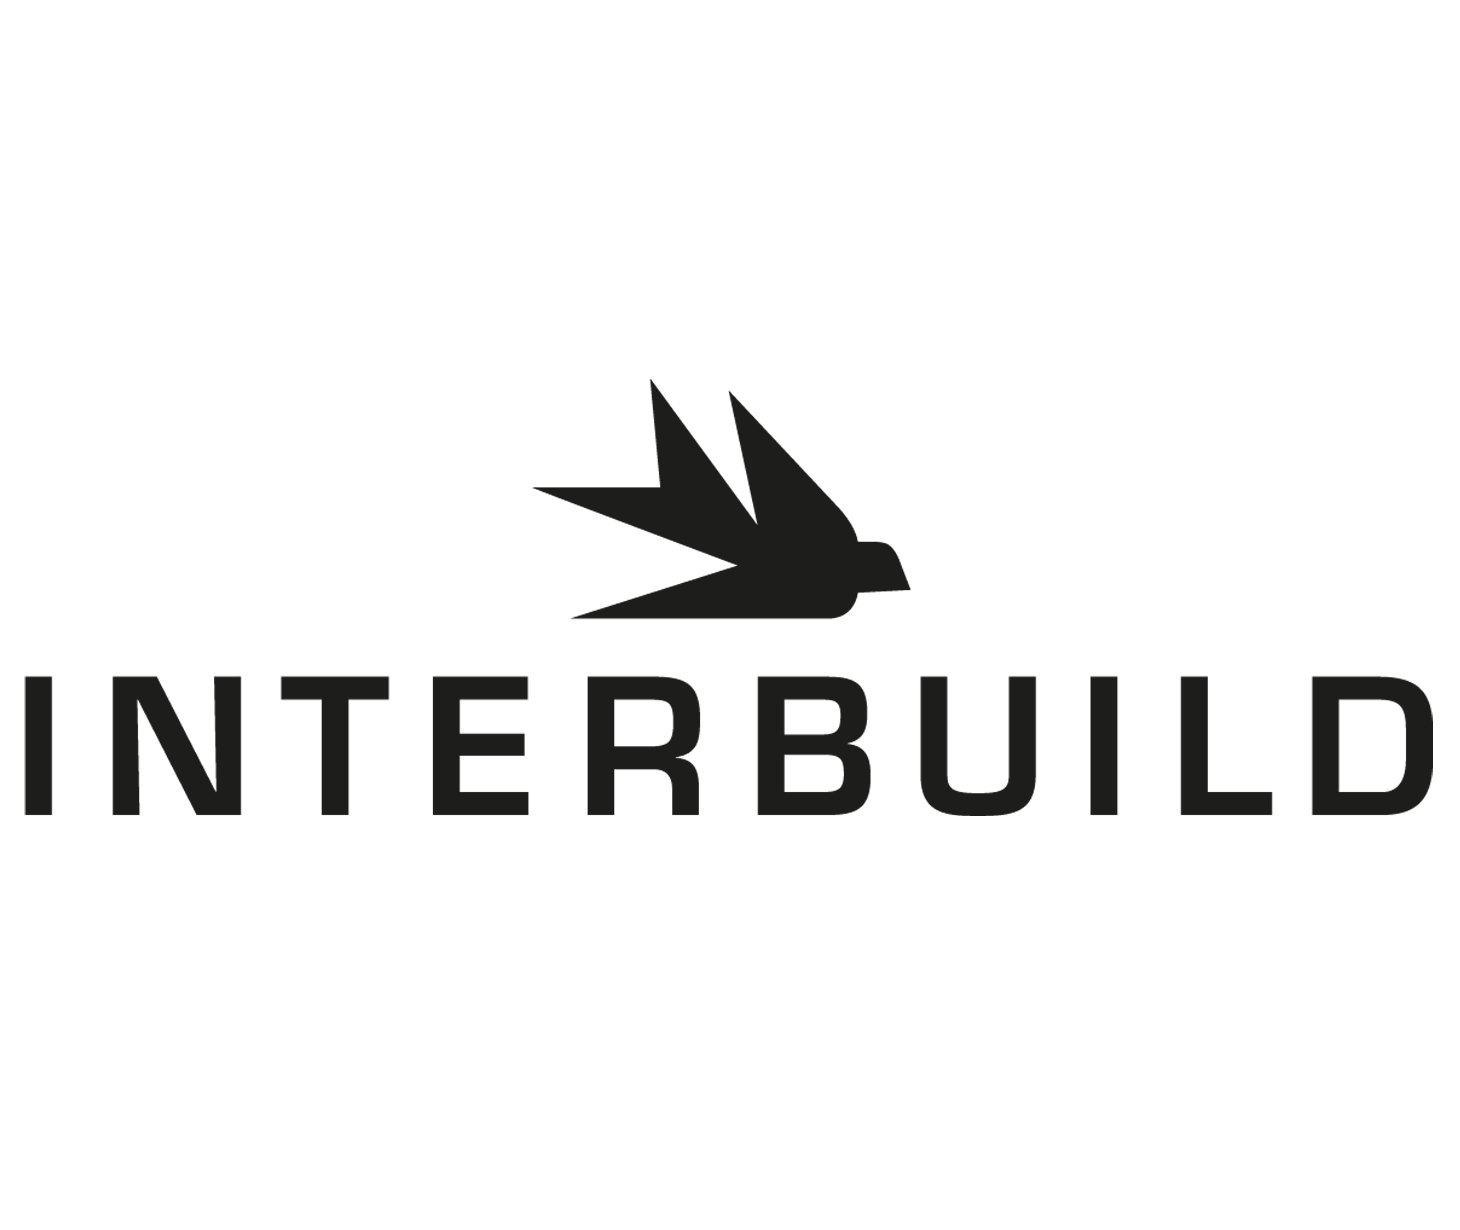 interbuild